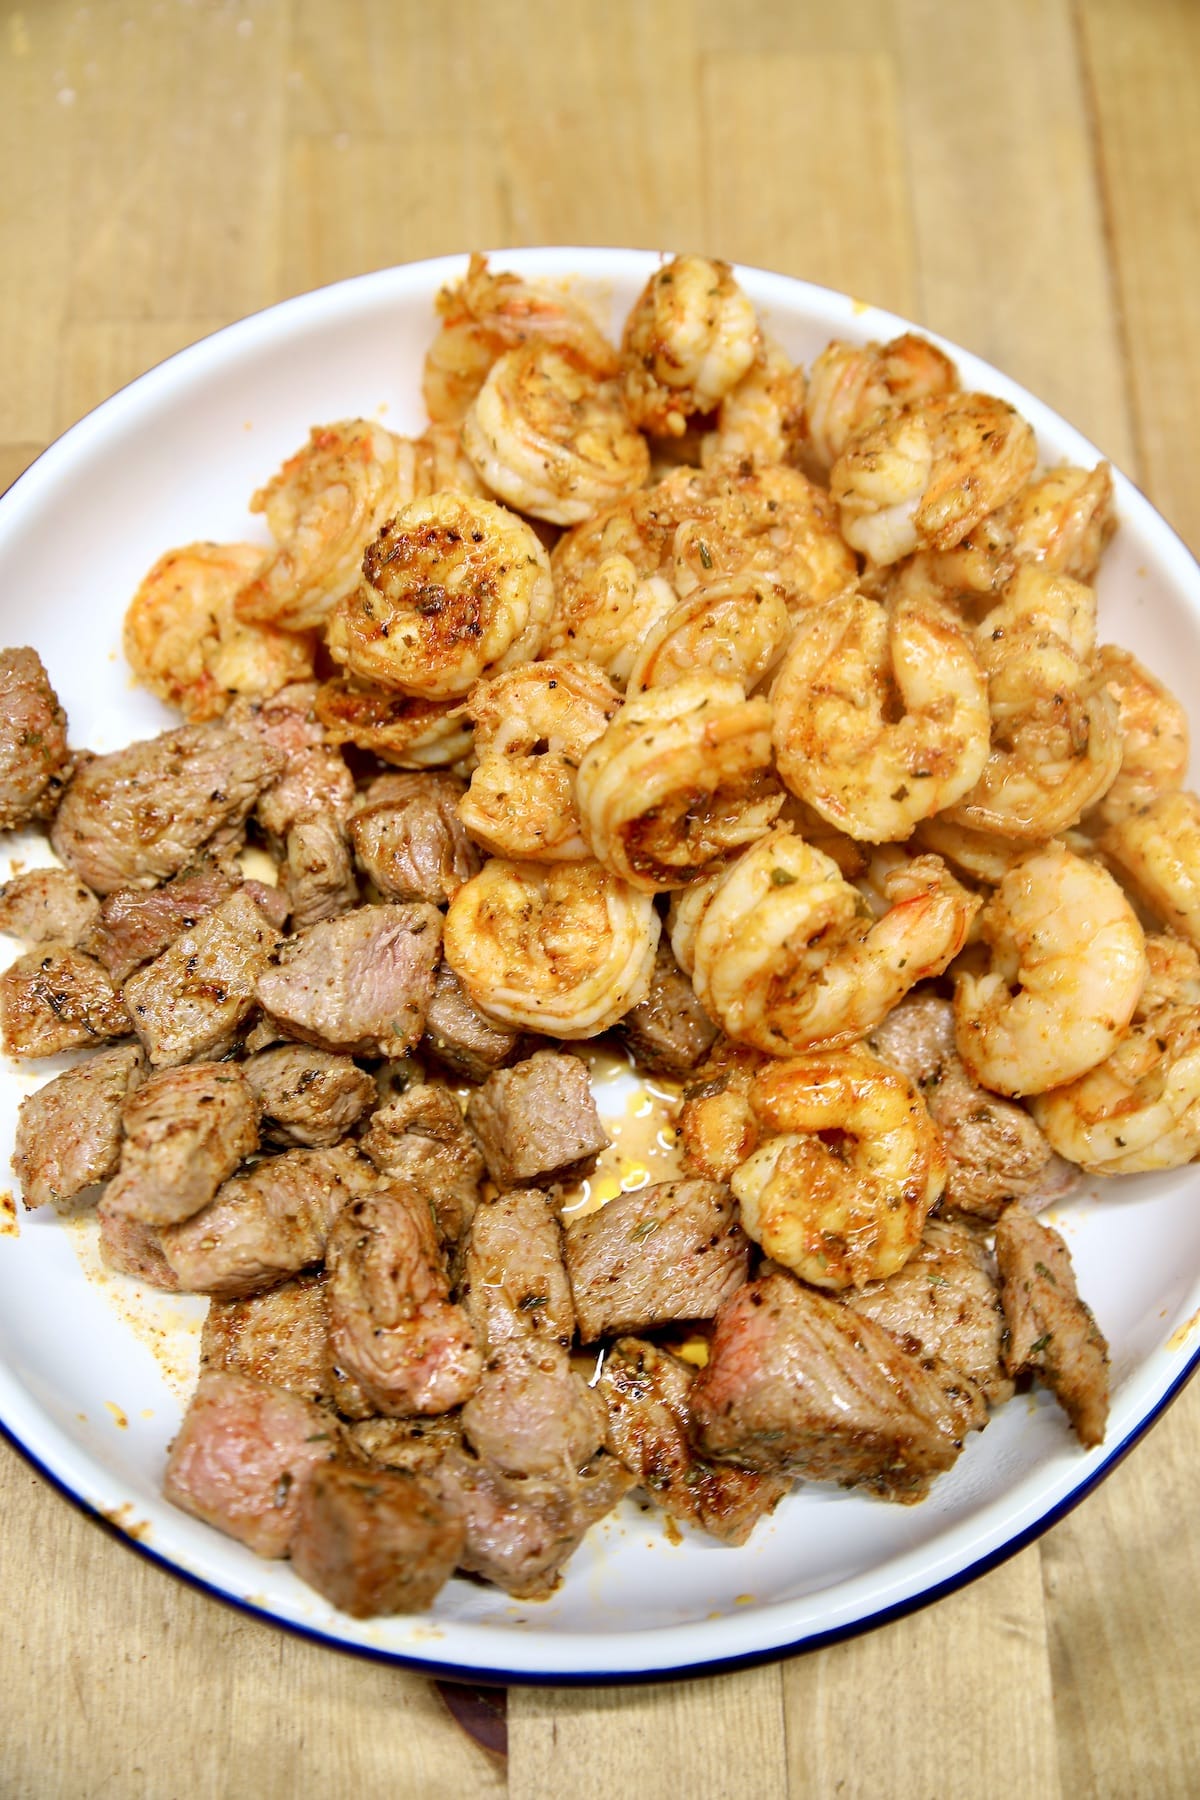 Cajun steak bites and shrimp in a pan.